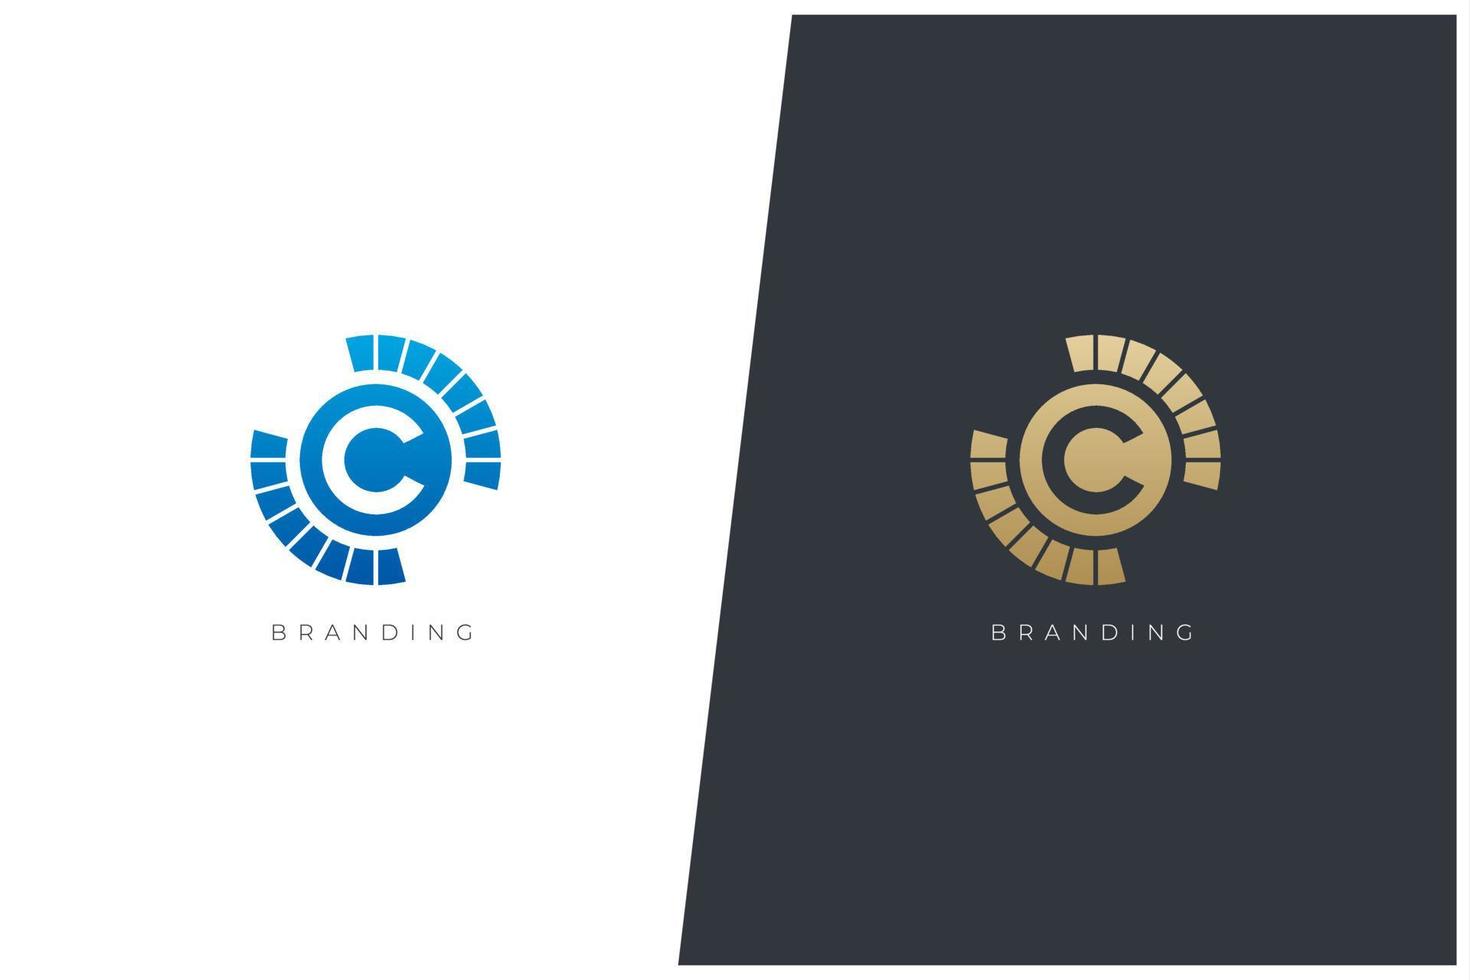 c carta logo vector concepto icono marca registrada. logotipo universal c marca